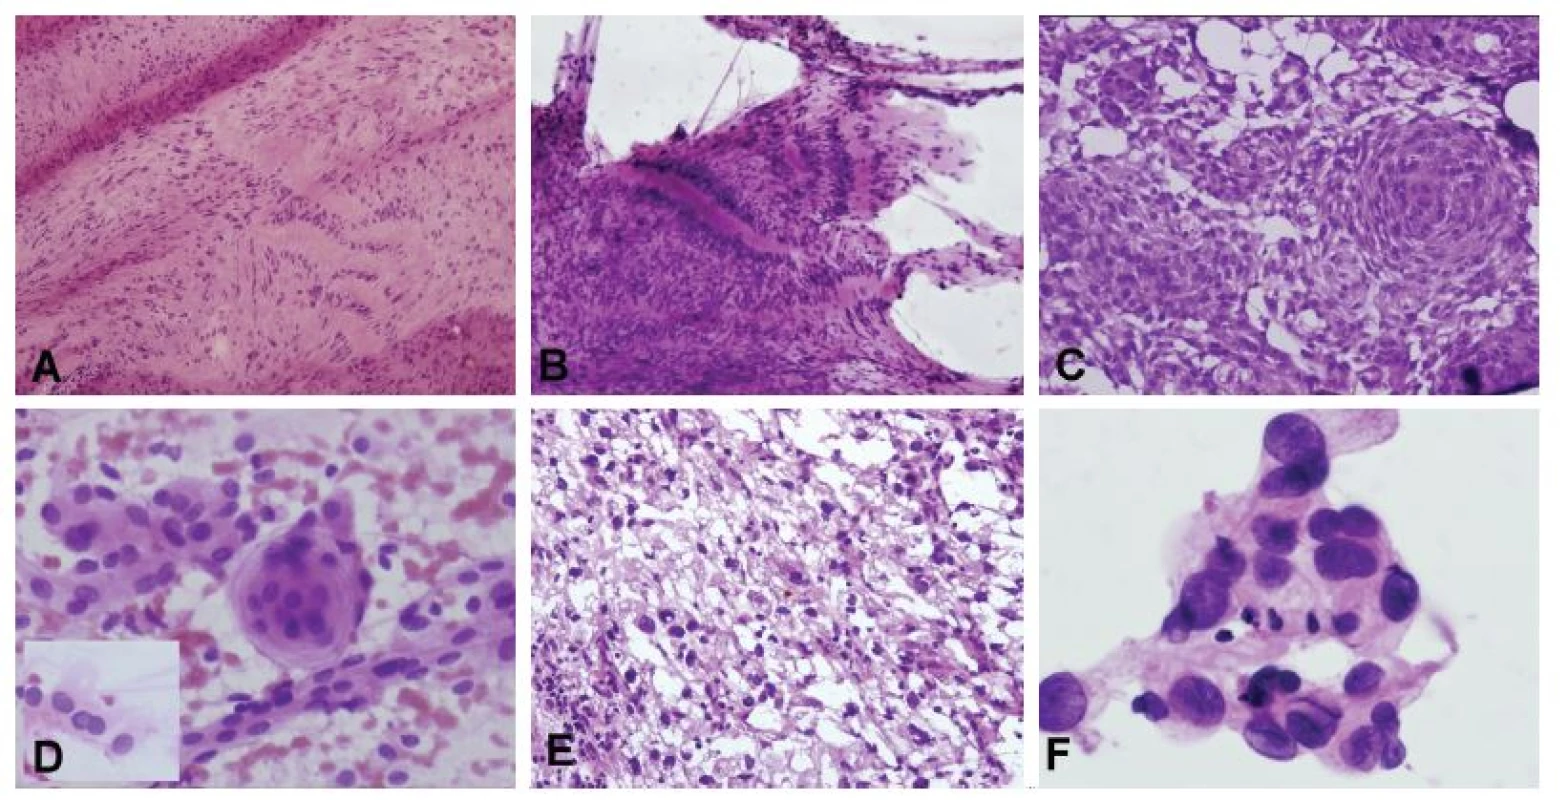 (A, B) Tumor pontocerebelárneho uhla u 53-ročného muža. V zmrazenom reze bola zachytená lézia bohatá na kolagénnu matrix a vretenitými bunkymi
s hyperchrómnymi pretiahnutými jadrami s naznačeným rytmickým/palisádujúcim usporiadaním (A). V náterovej cytológii prítomné iba zhluky tkaniva (žiadne
izolované bunky) zloženého z vretenitých buniek s tmavými jadrami, palisádovanie však bolo ložiskovo ešte výraznejšie ako v zmrazenom reze (B). Peroperačná
a definitívna diagnóza: schwannóm. (C, D) Tumor pontocerebelárneho uhla u 48-ročnej ženy. V zmrazenom reze je zachytená solídna proliferácia epiteloidných
buniek, s naznačenými vírovitými formáciami (C). V náterovej cytológii monotónna blandná populácia epiteloidných kohezívnych buniek (spojené širokým
pruhom cytoplazmy), ložiskovo s typickým vírovitým usporiadaním a jadrovými pseudoinklúziami (vložený obrázok) (D). Peroperačná diagnóza: meningióm.
Definitívna diagnóza: meningoteliálny meningióm, grade I. (E, F) 62-ročná žena so solídno-cystickým tumorom hemisféry mozočka. V zmrazenom reze bola
zachytená nádorová lézia tvorená bunkymi s vakuolizovanou cytoplazmou a atypickými hyperchrómnymi jadrami (E). V náterovej cytológii kohezívne fragmenty
tvorené epiteloidnými bunkami s atypickými jadrami a jemne vakuolizovanou cytoplazmou (F). Peroperačná a definitívna diagnóza: hemagioblastóm.